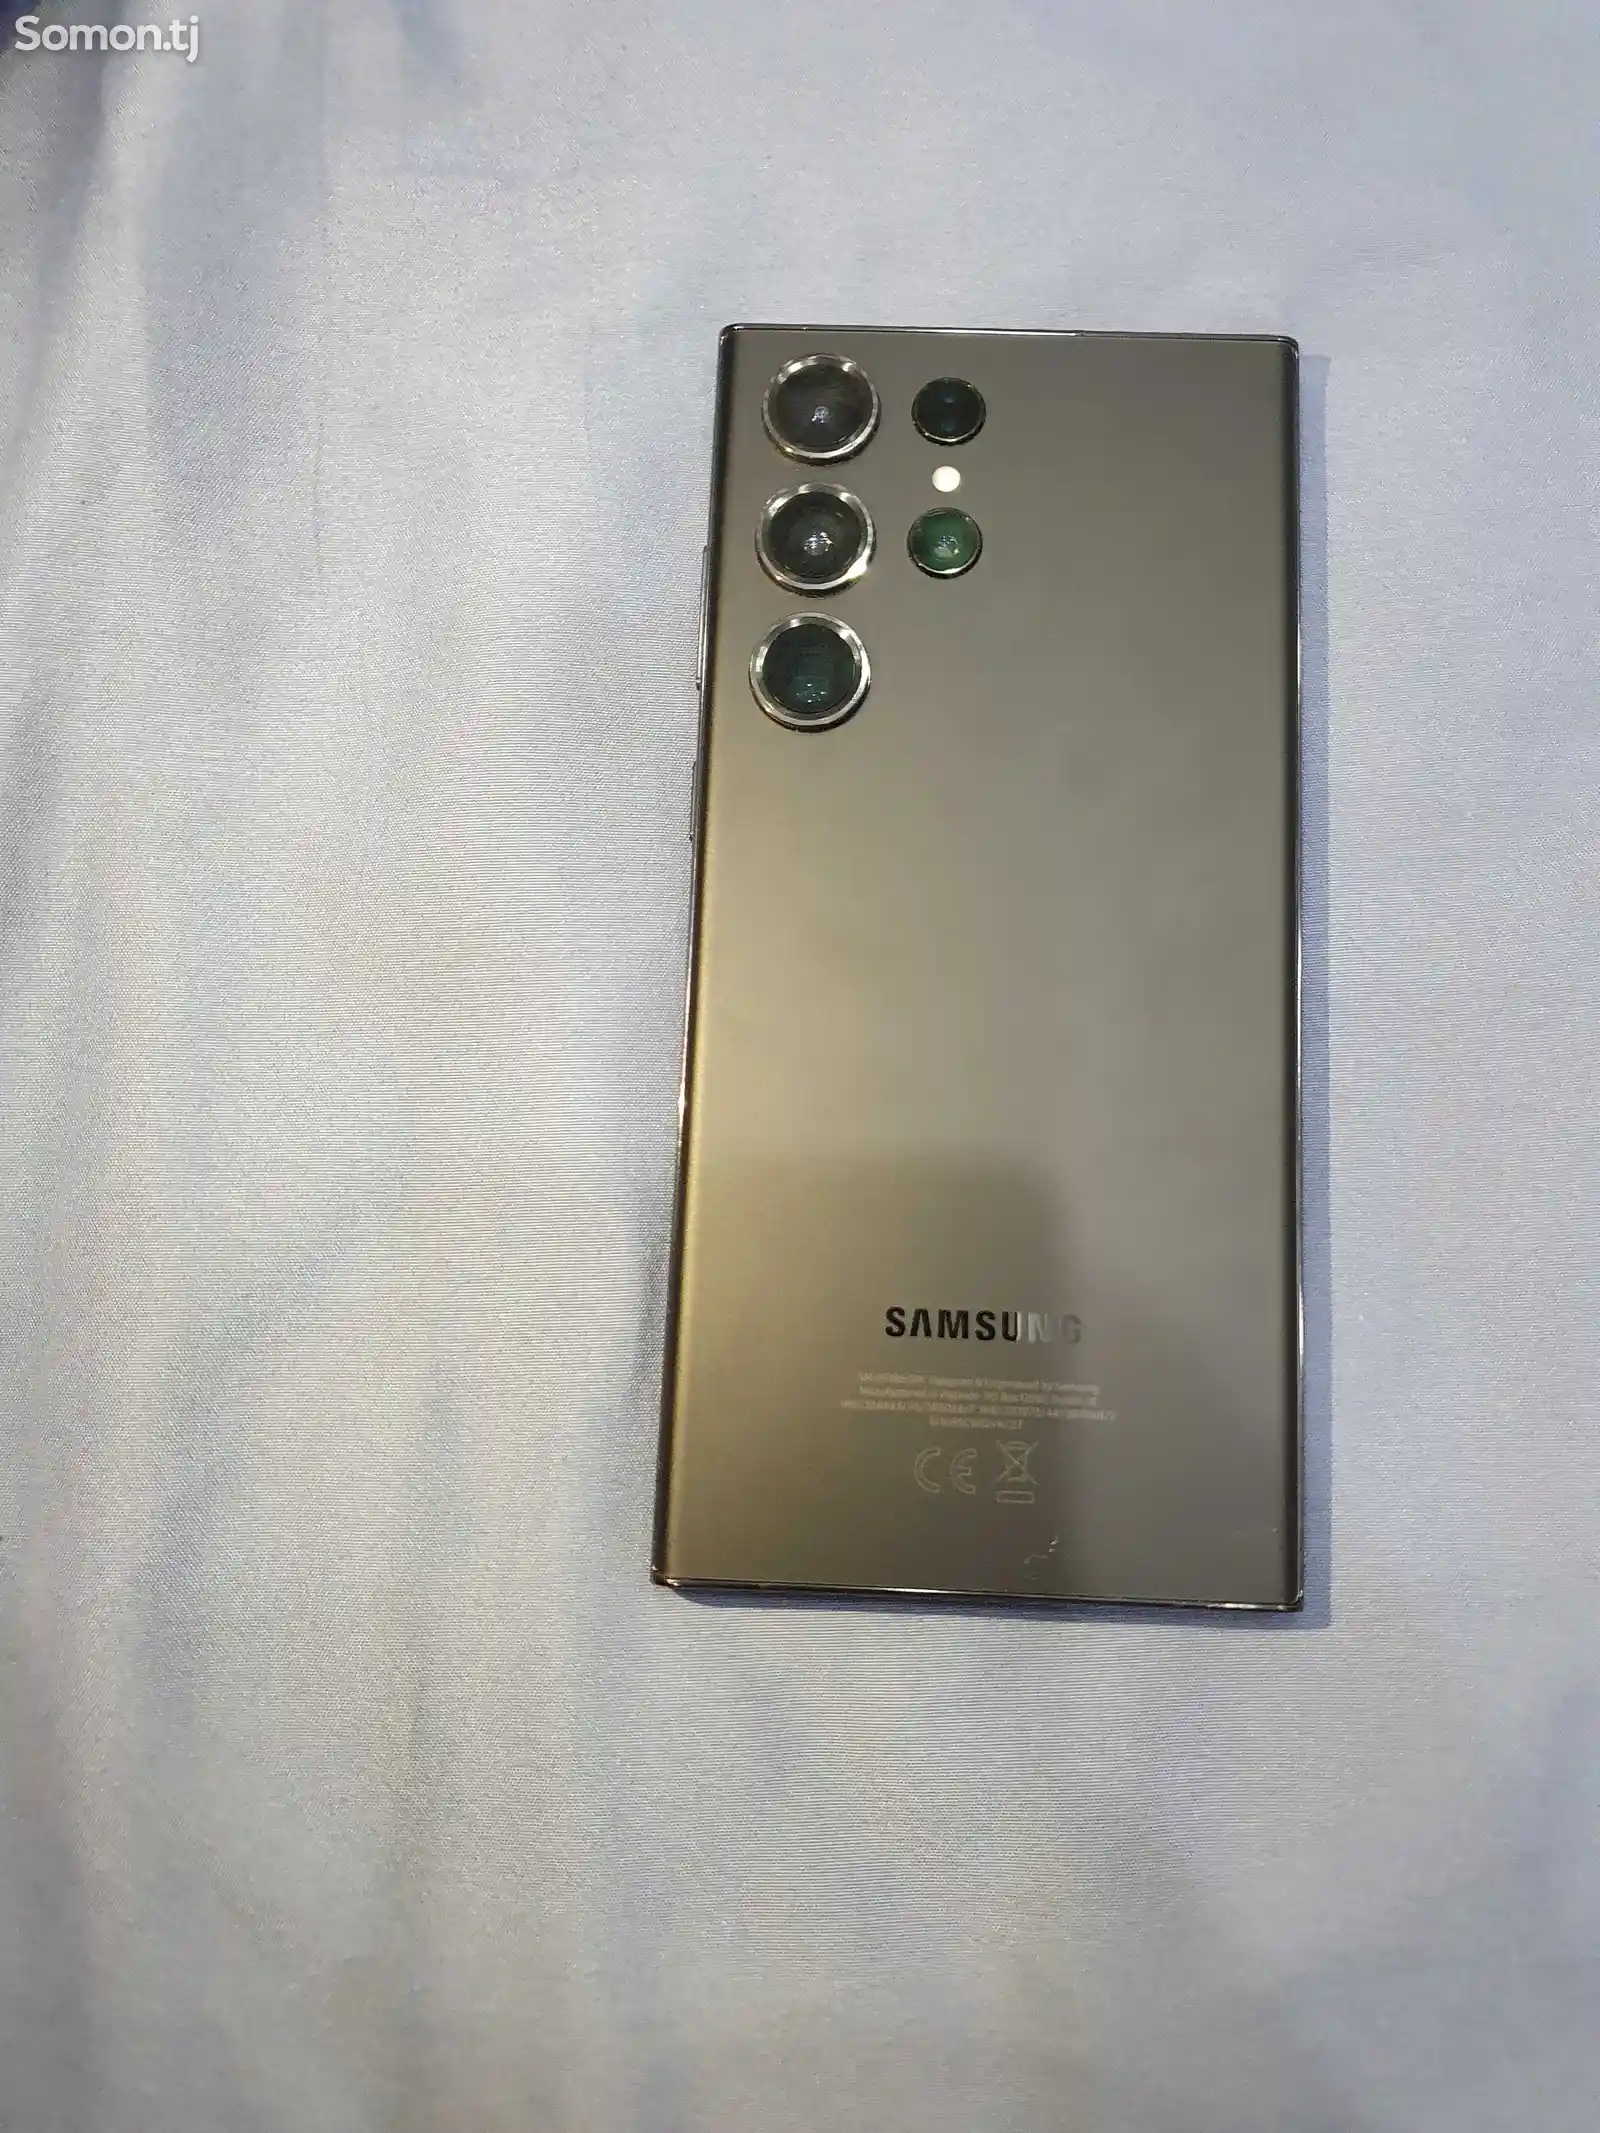 Samsung Galaxy S23-1